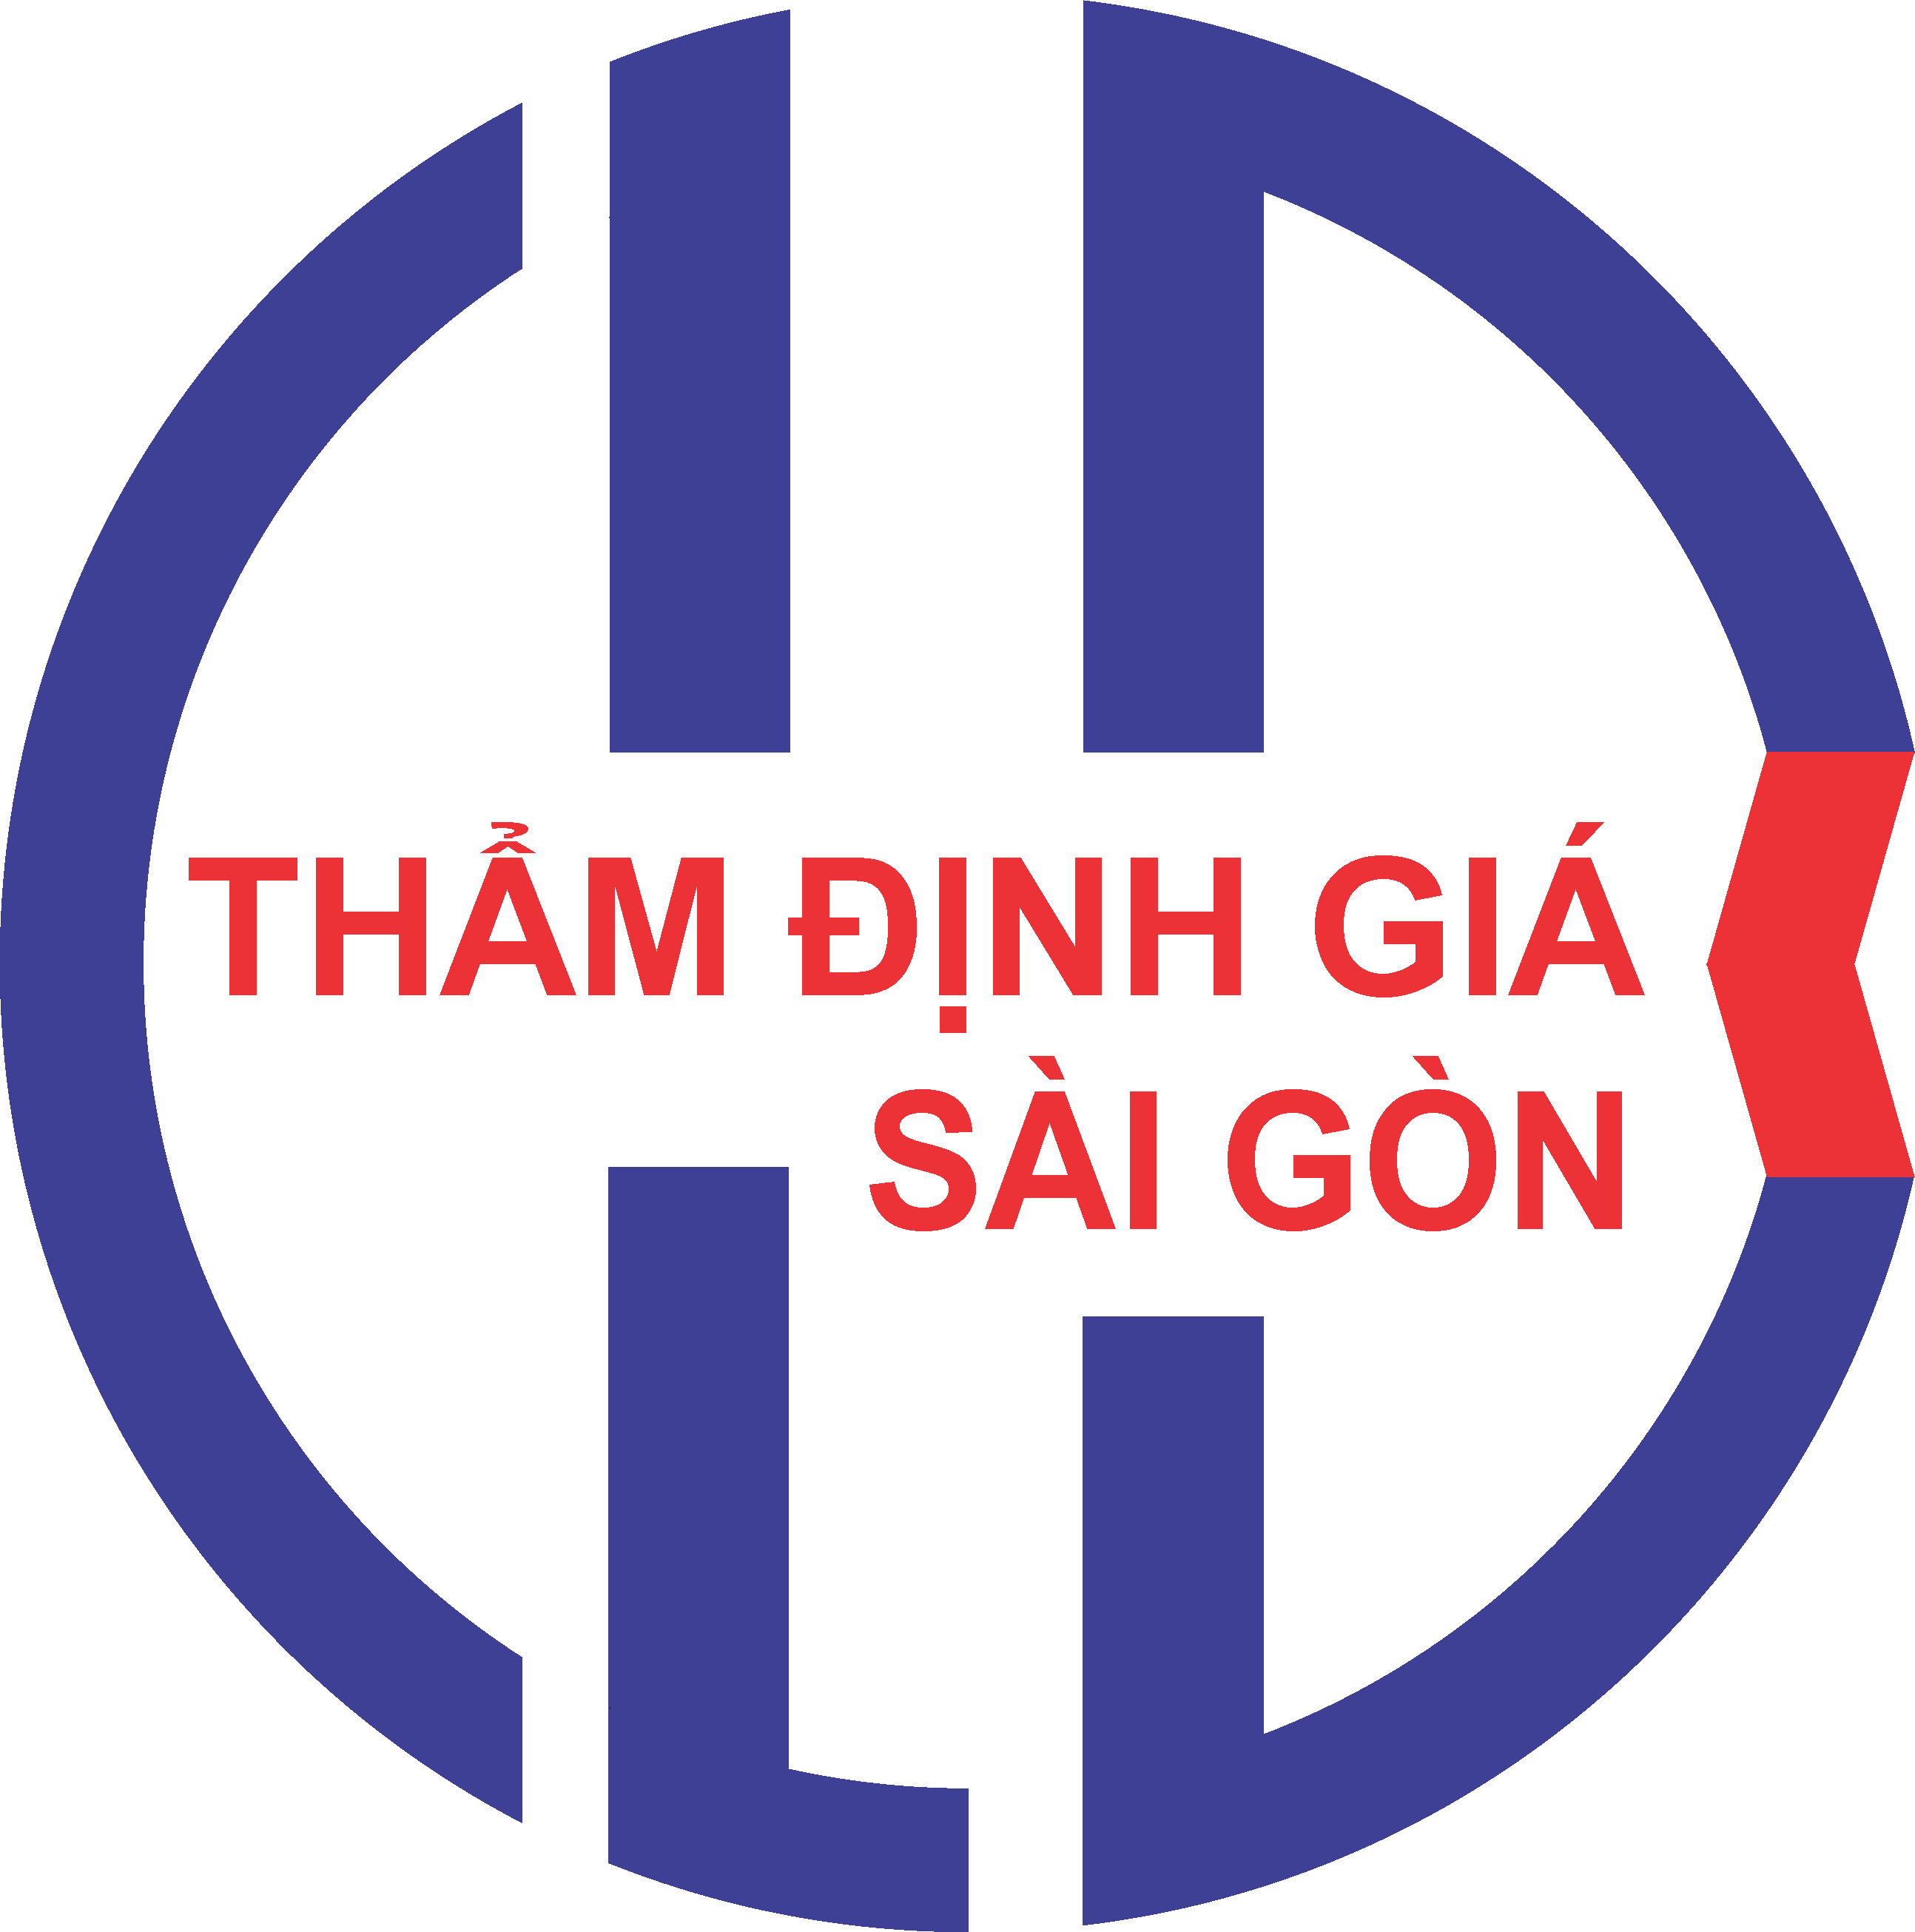 CLB Thẩm định giá Sài Gòn